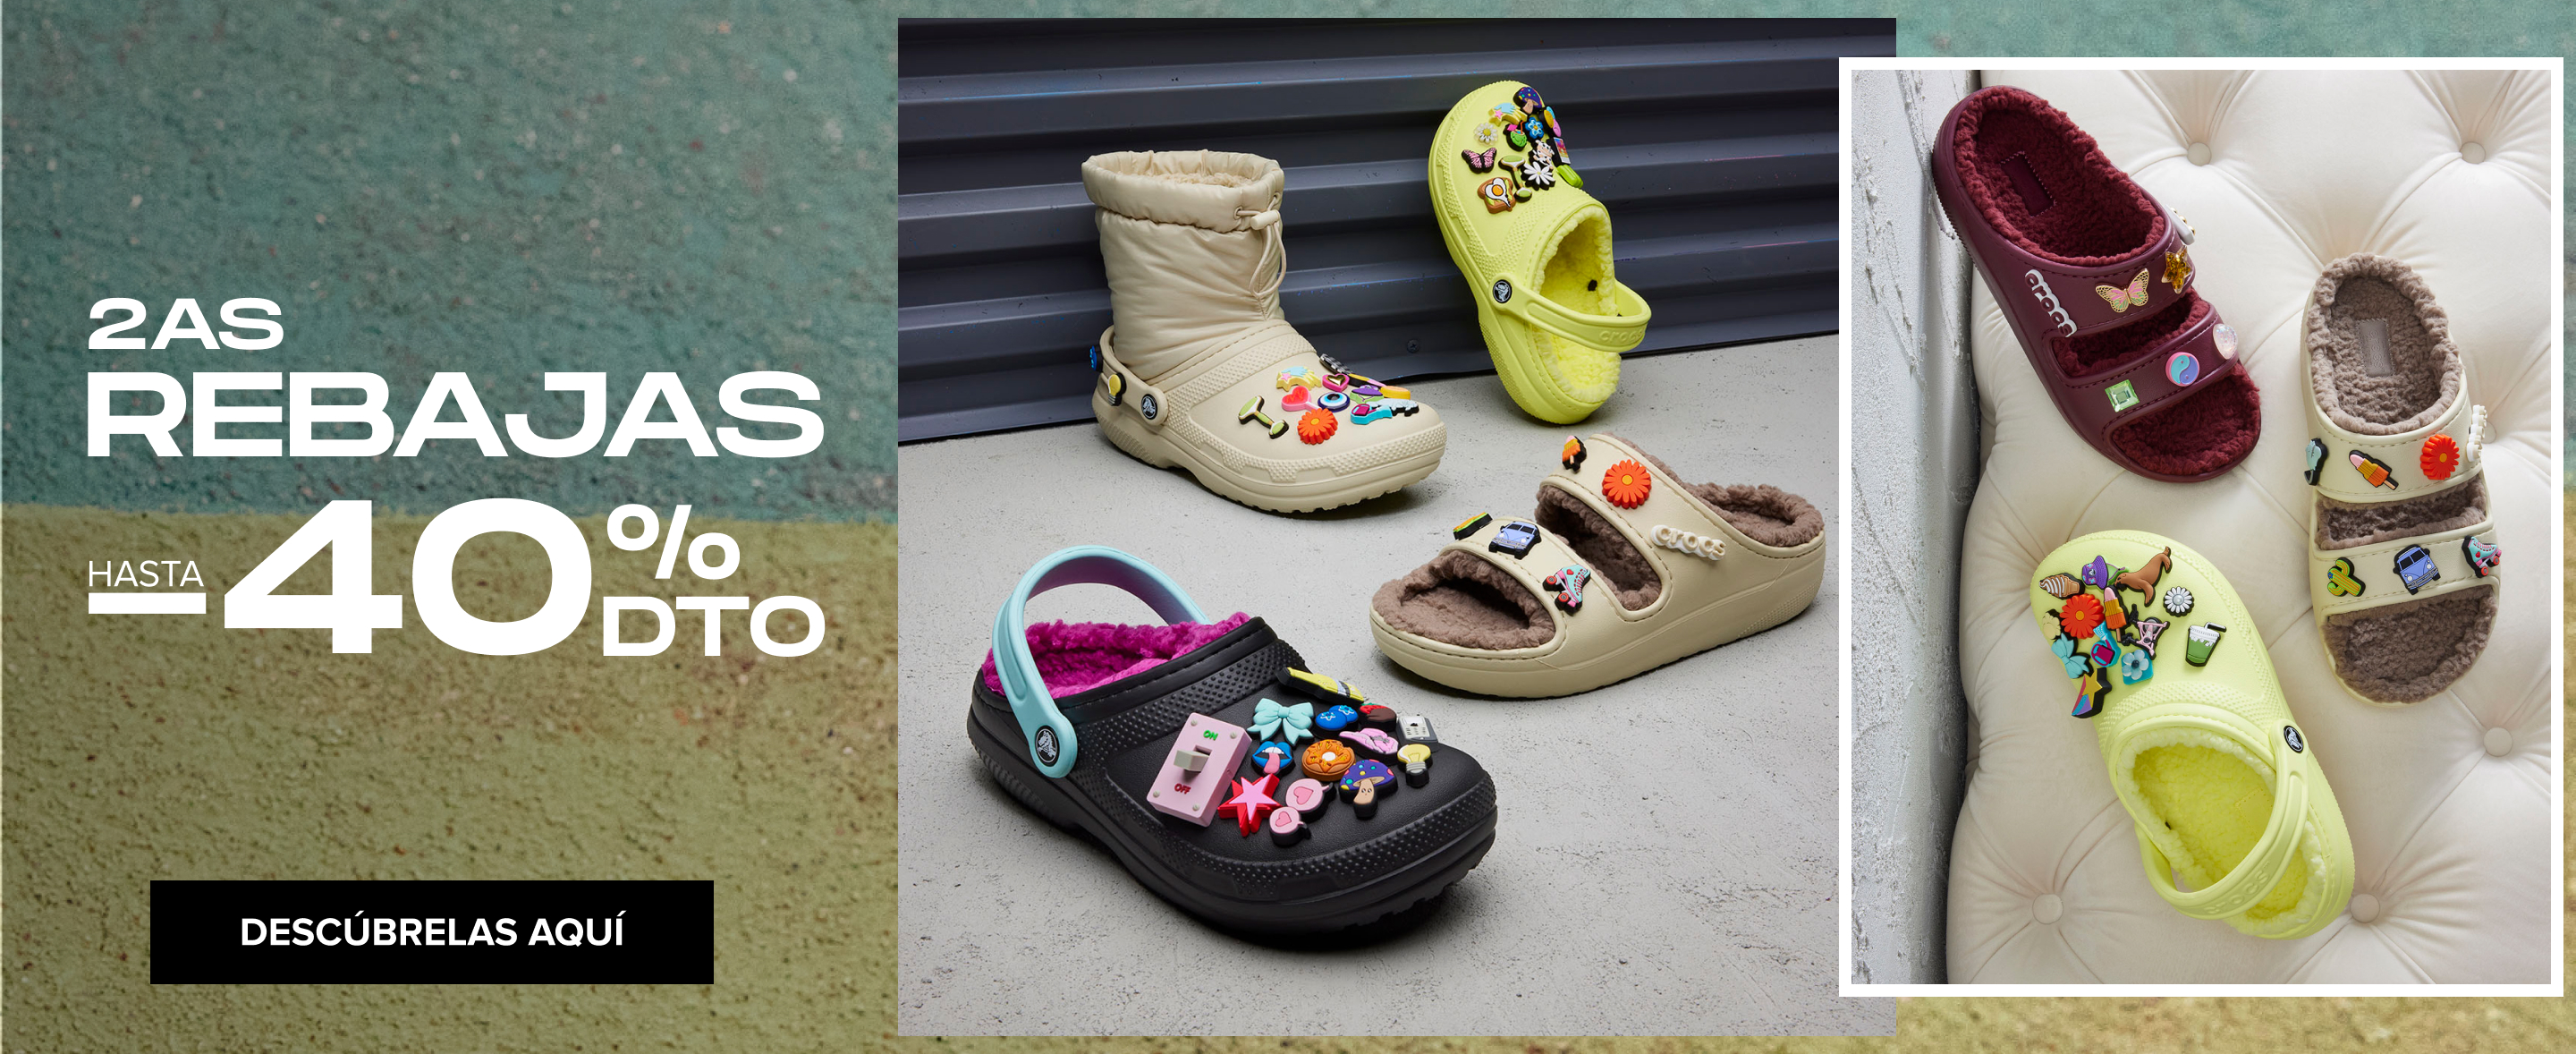 Amado Labe inercia Tienda online de zapatos - Comprar calzado online Crocs